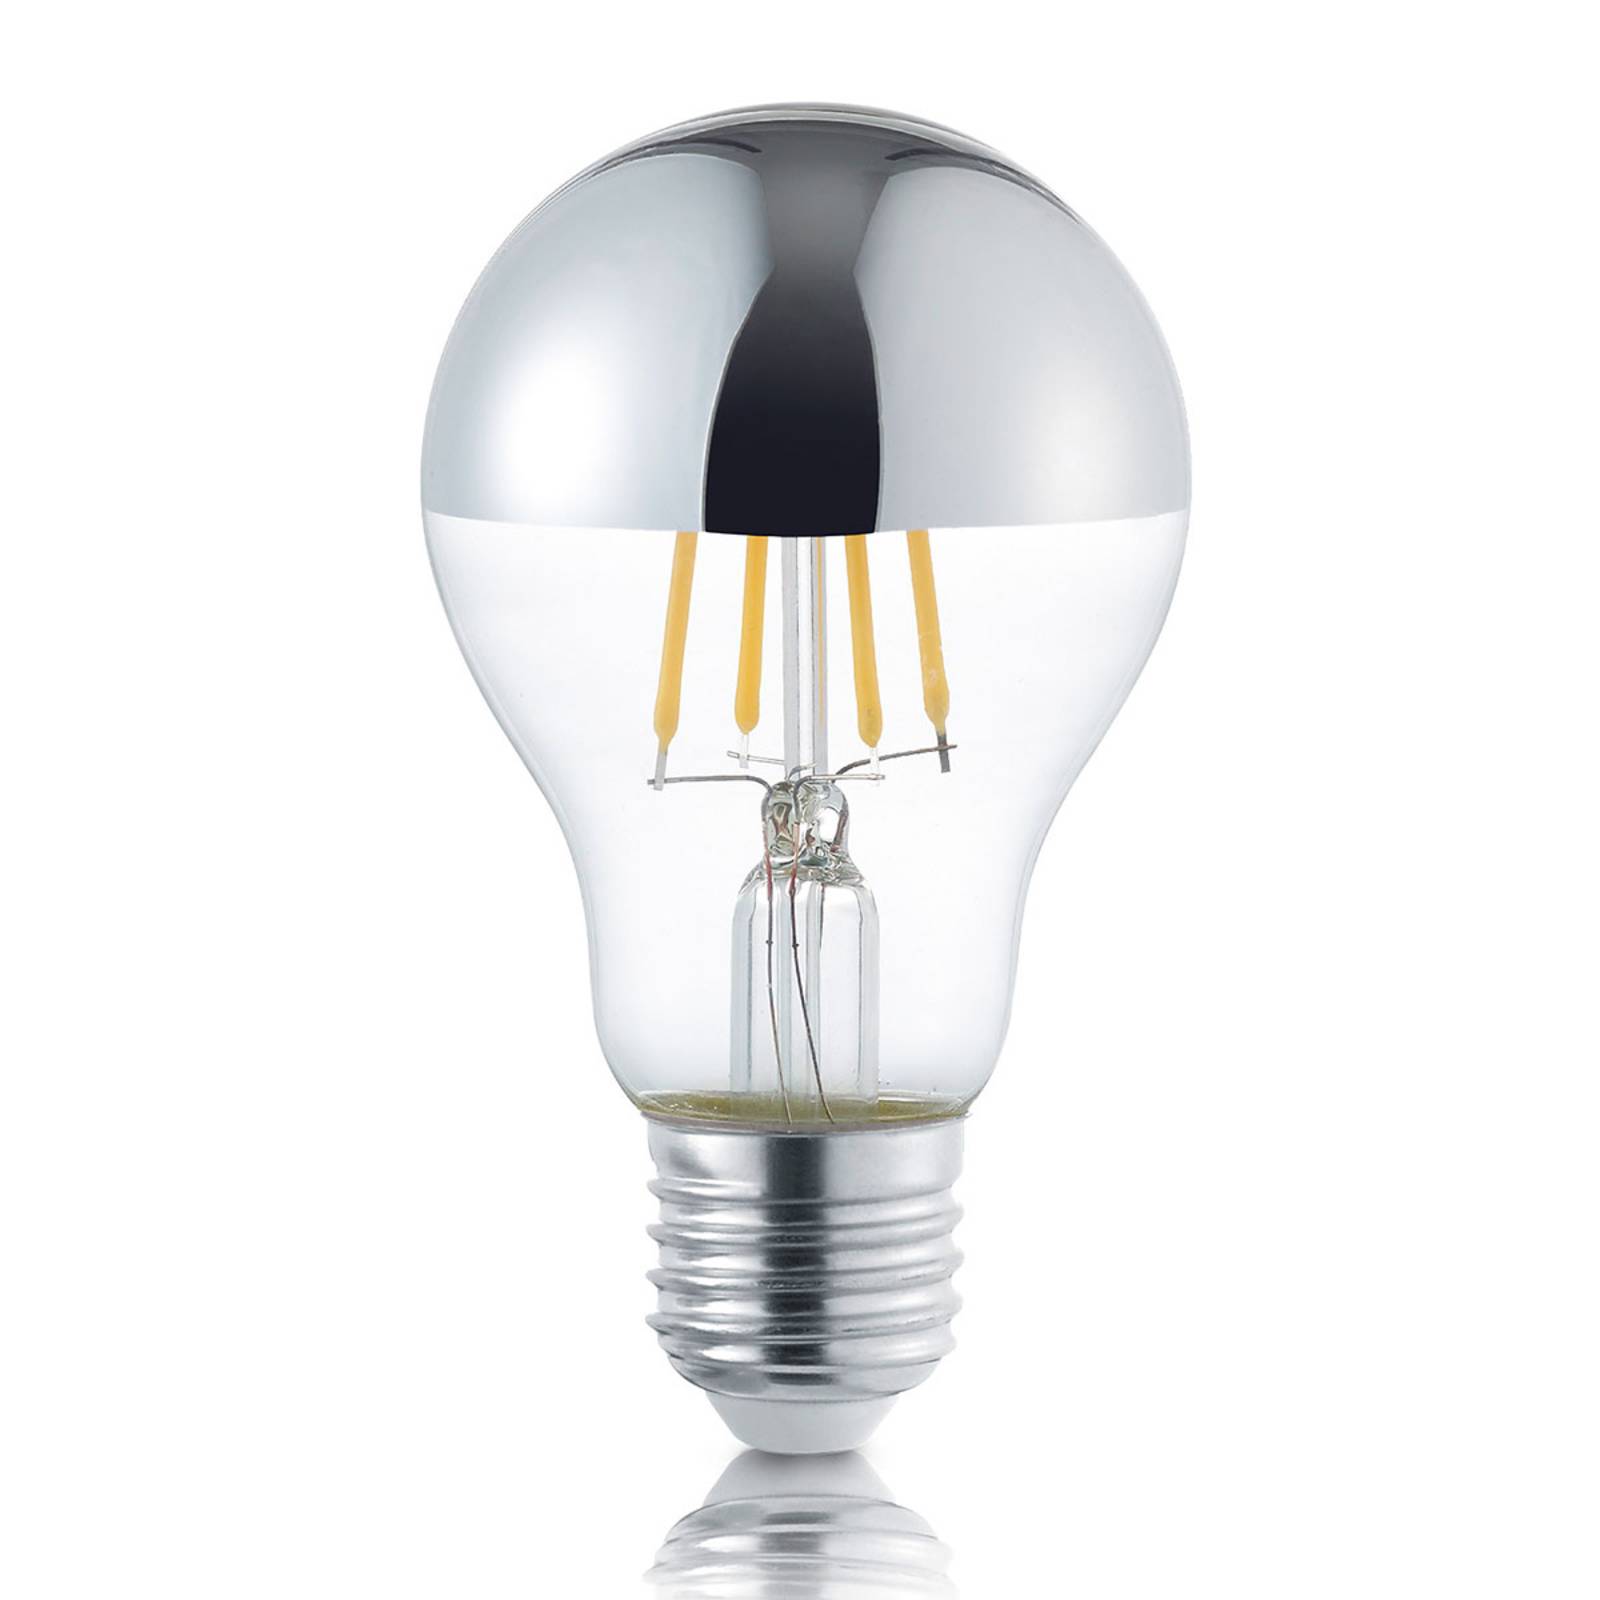 Trio Lighting LED-toppförspeglad lampa E27 4 W varmvit